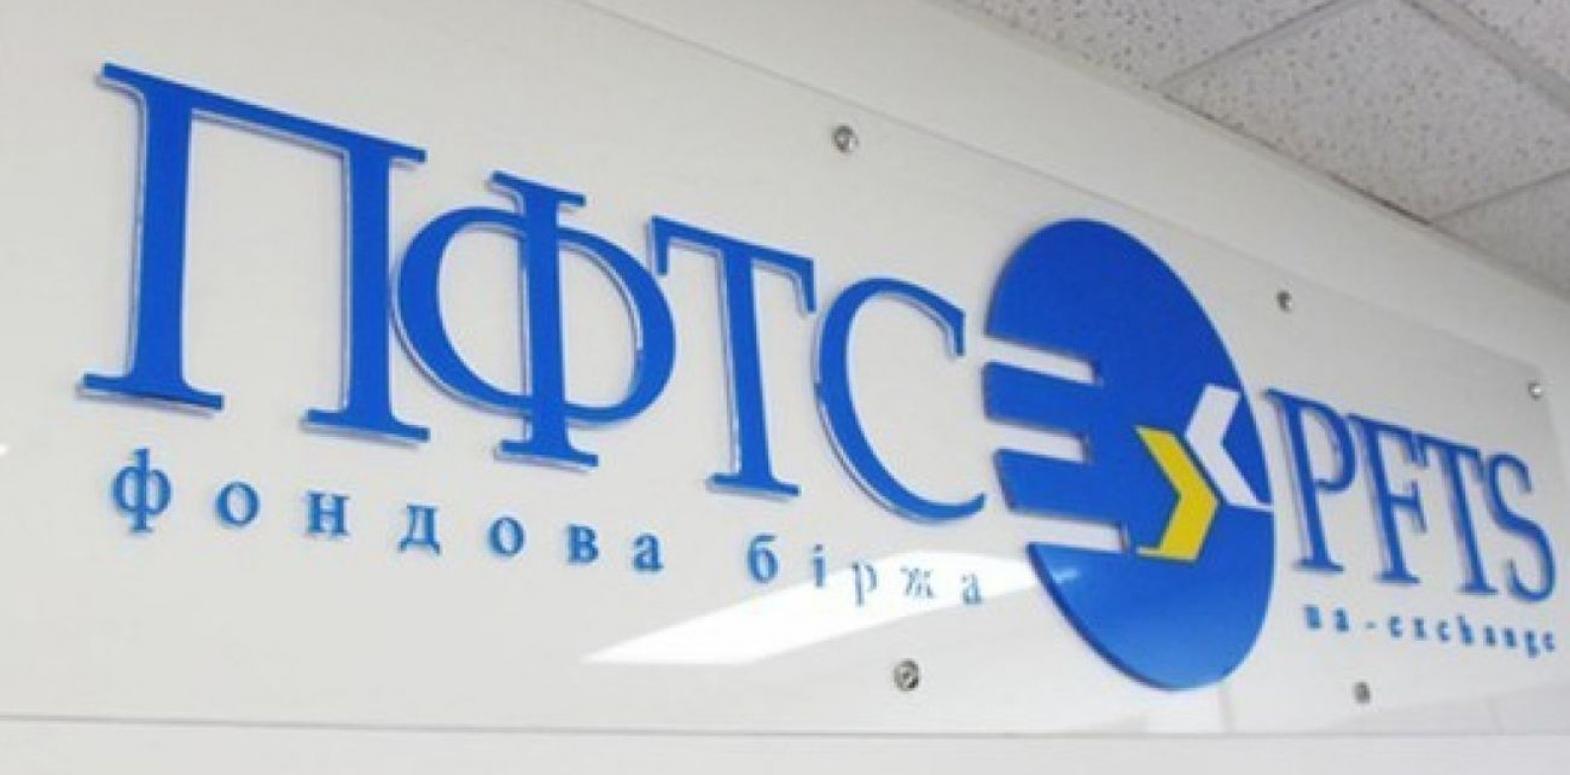 Старейшая фондовая биржа Украины аннулирует все имеющиеся лицензии: что произошло